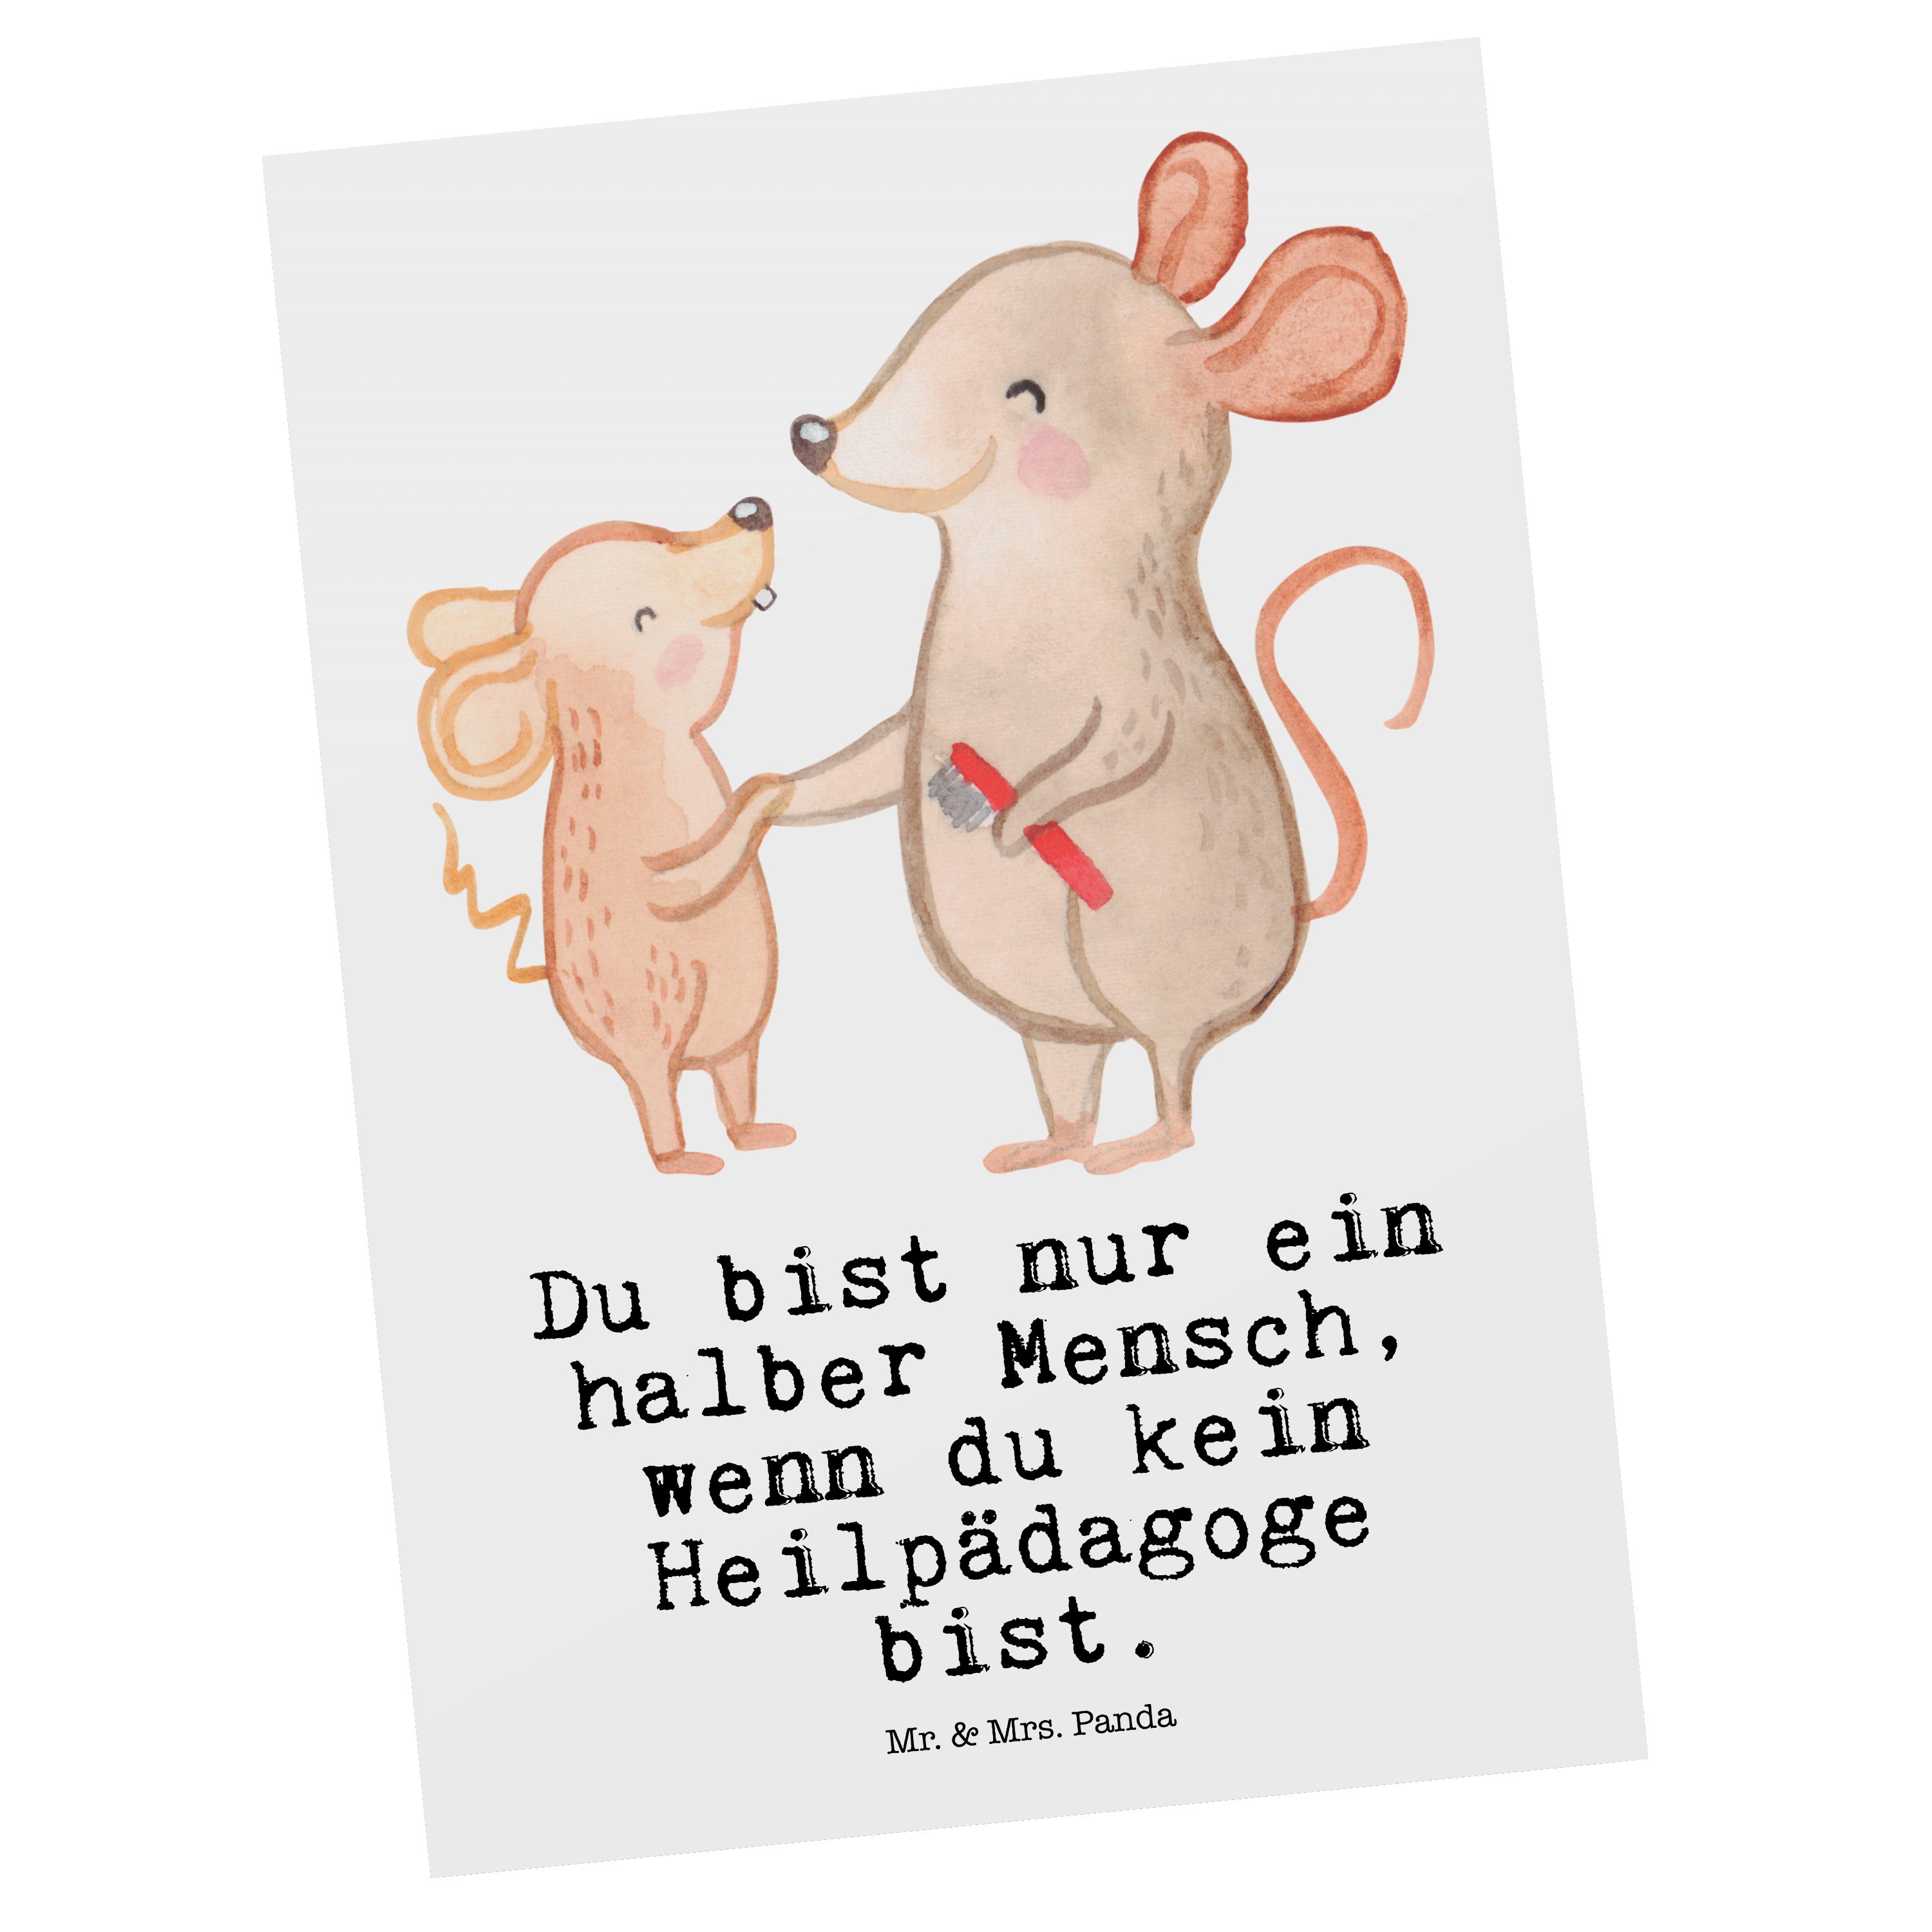 Mr. & Mrs. Panda Postkarte Heilpädagoge mit Herz - Weiß - Geschenk, Danke, Jubiläum, Kollege, He